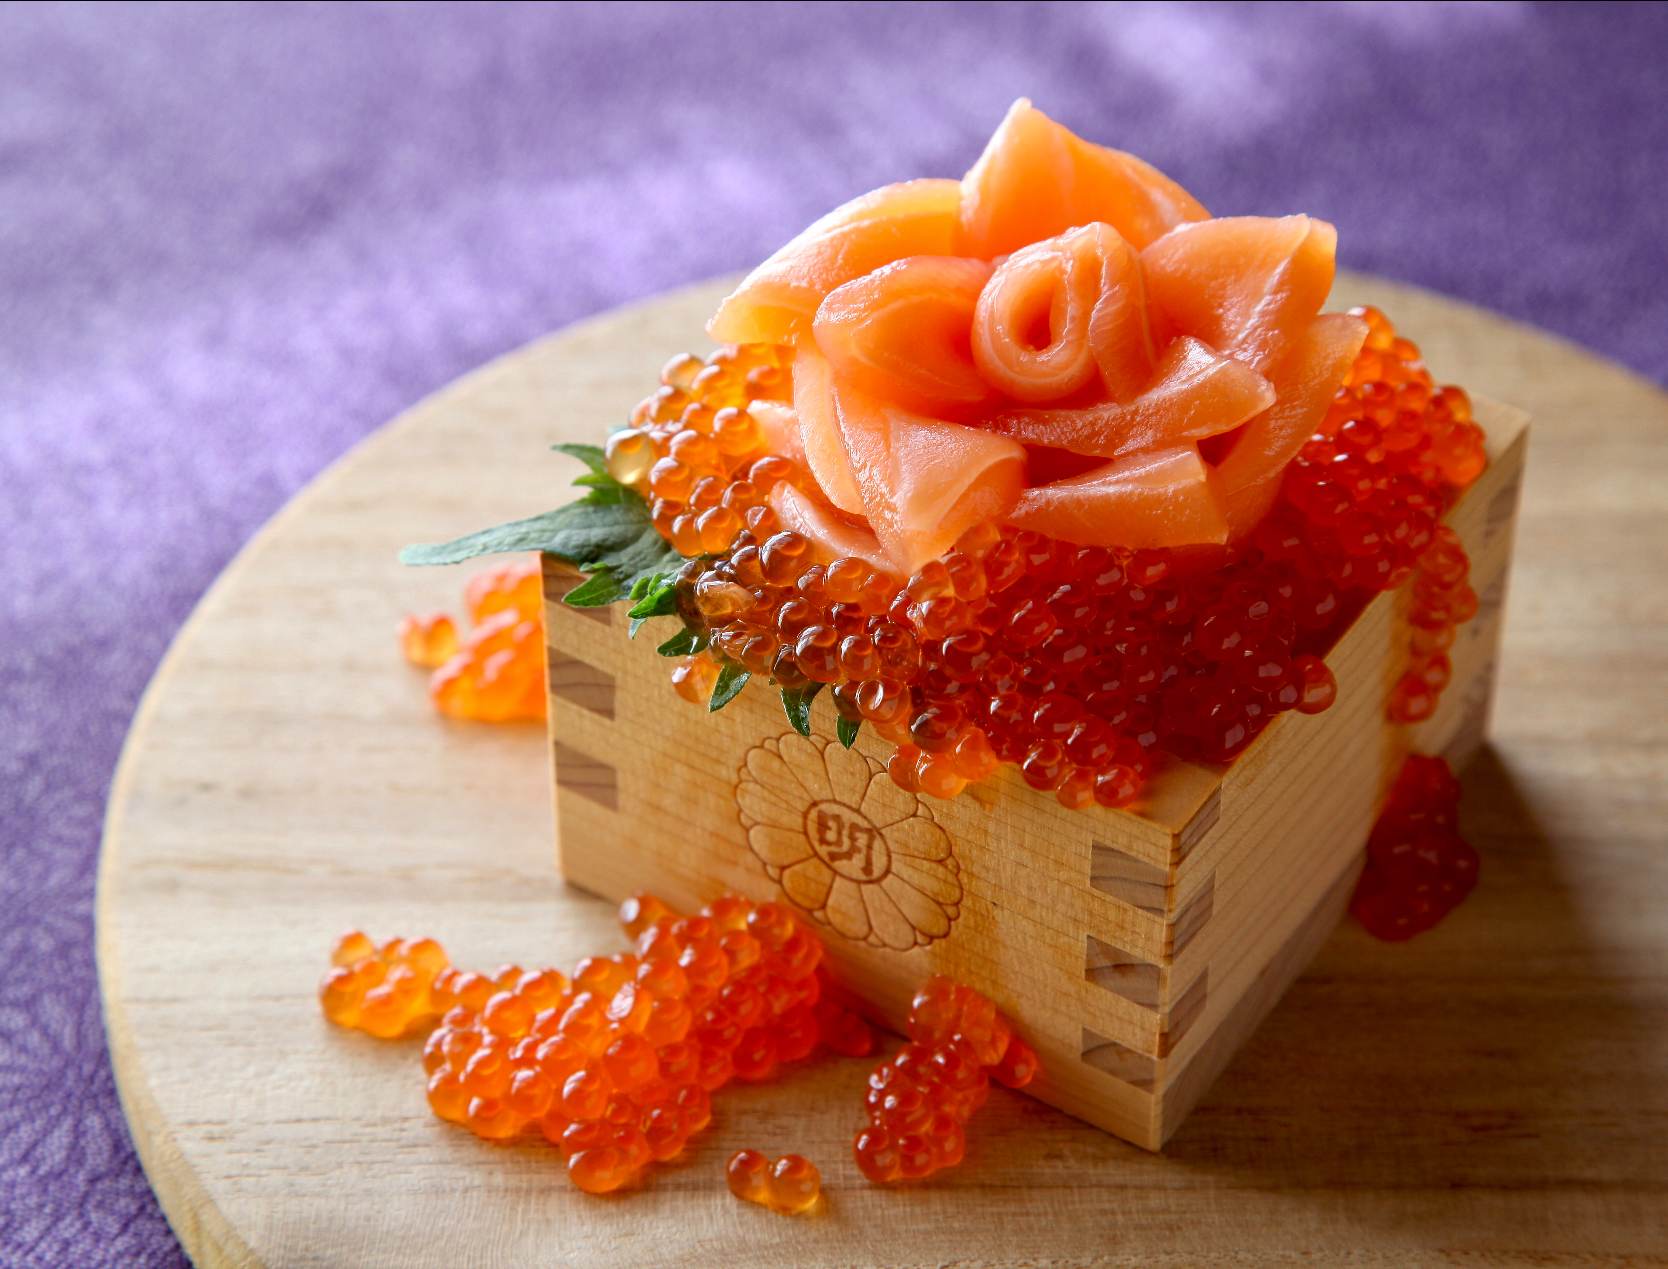 明治神宮の升で薔薇サーモンと溢れイクラの親子升寿司 お寿司グランプリ21 ヤマサ醤油株式会社